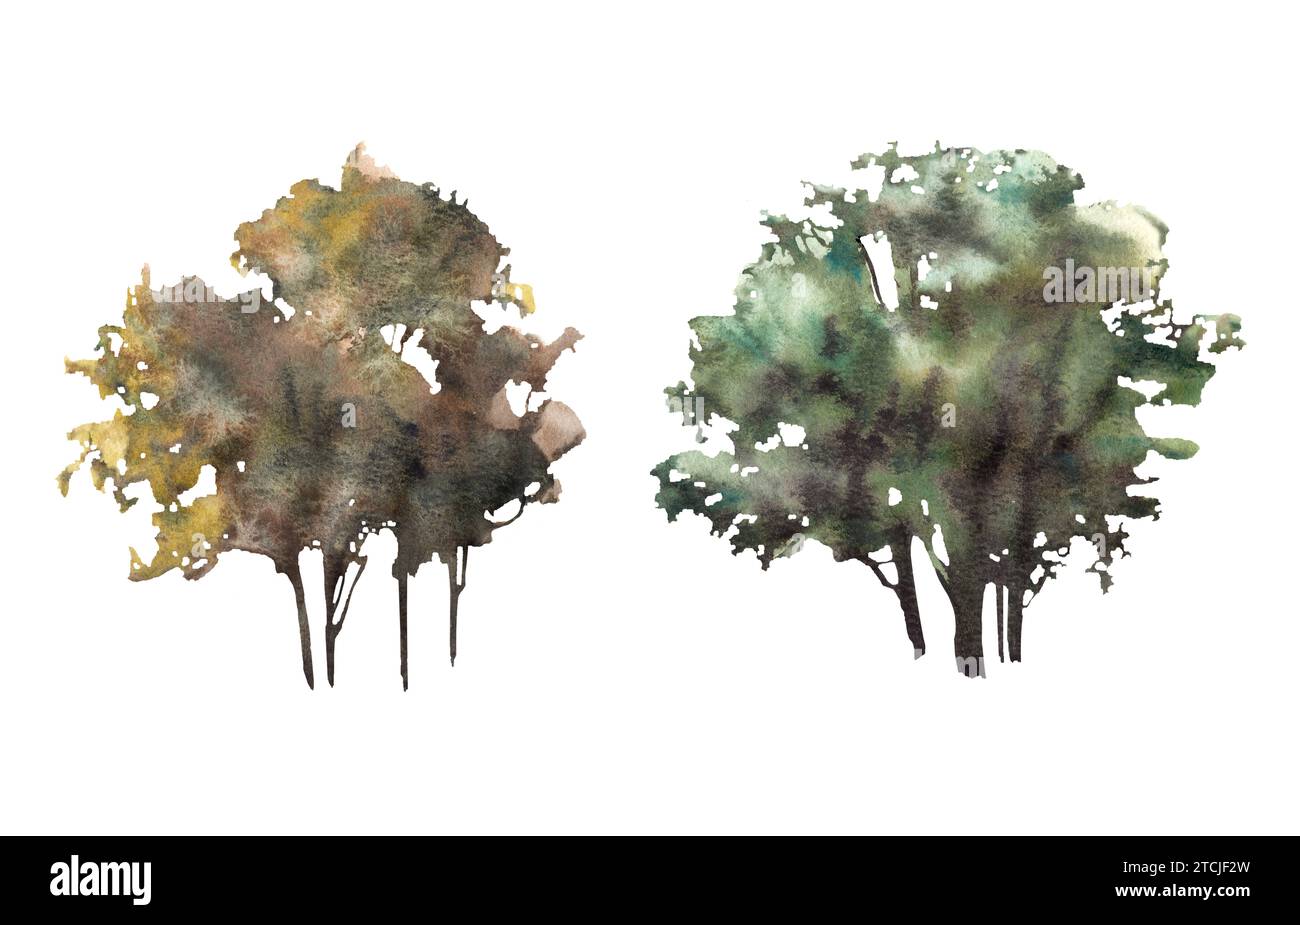 Laubbäume oder Büsche Aquarell handgemalt Illustration Clipart. Verschiedene Wald-, Park-, Feldpflanzenelemente für Ihre Karte, Landschaftsvorlage, Stockfoto